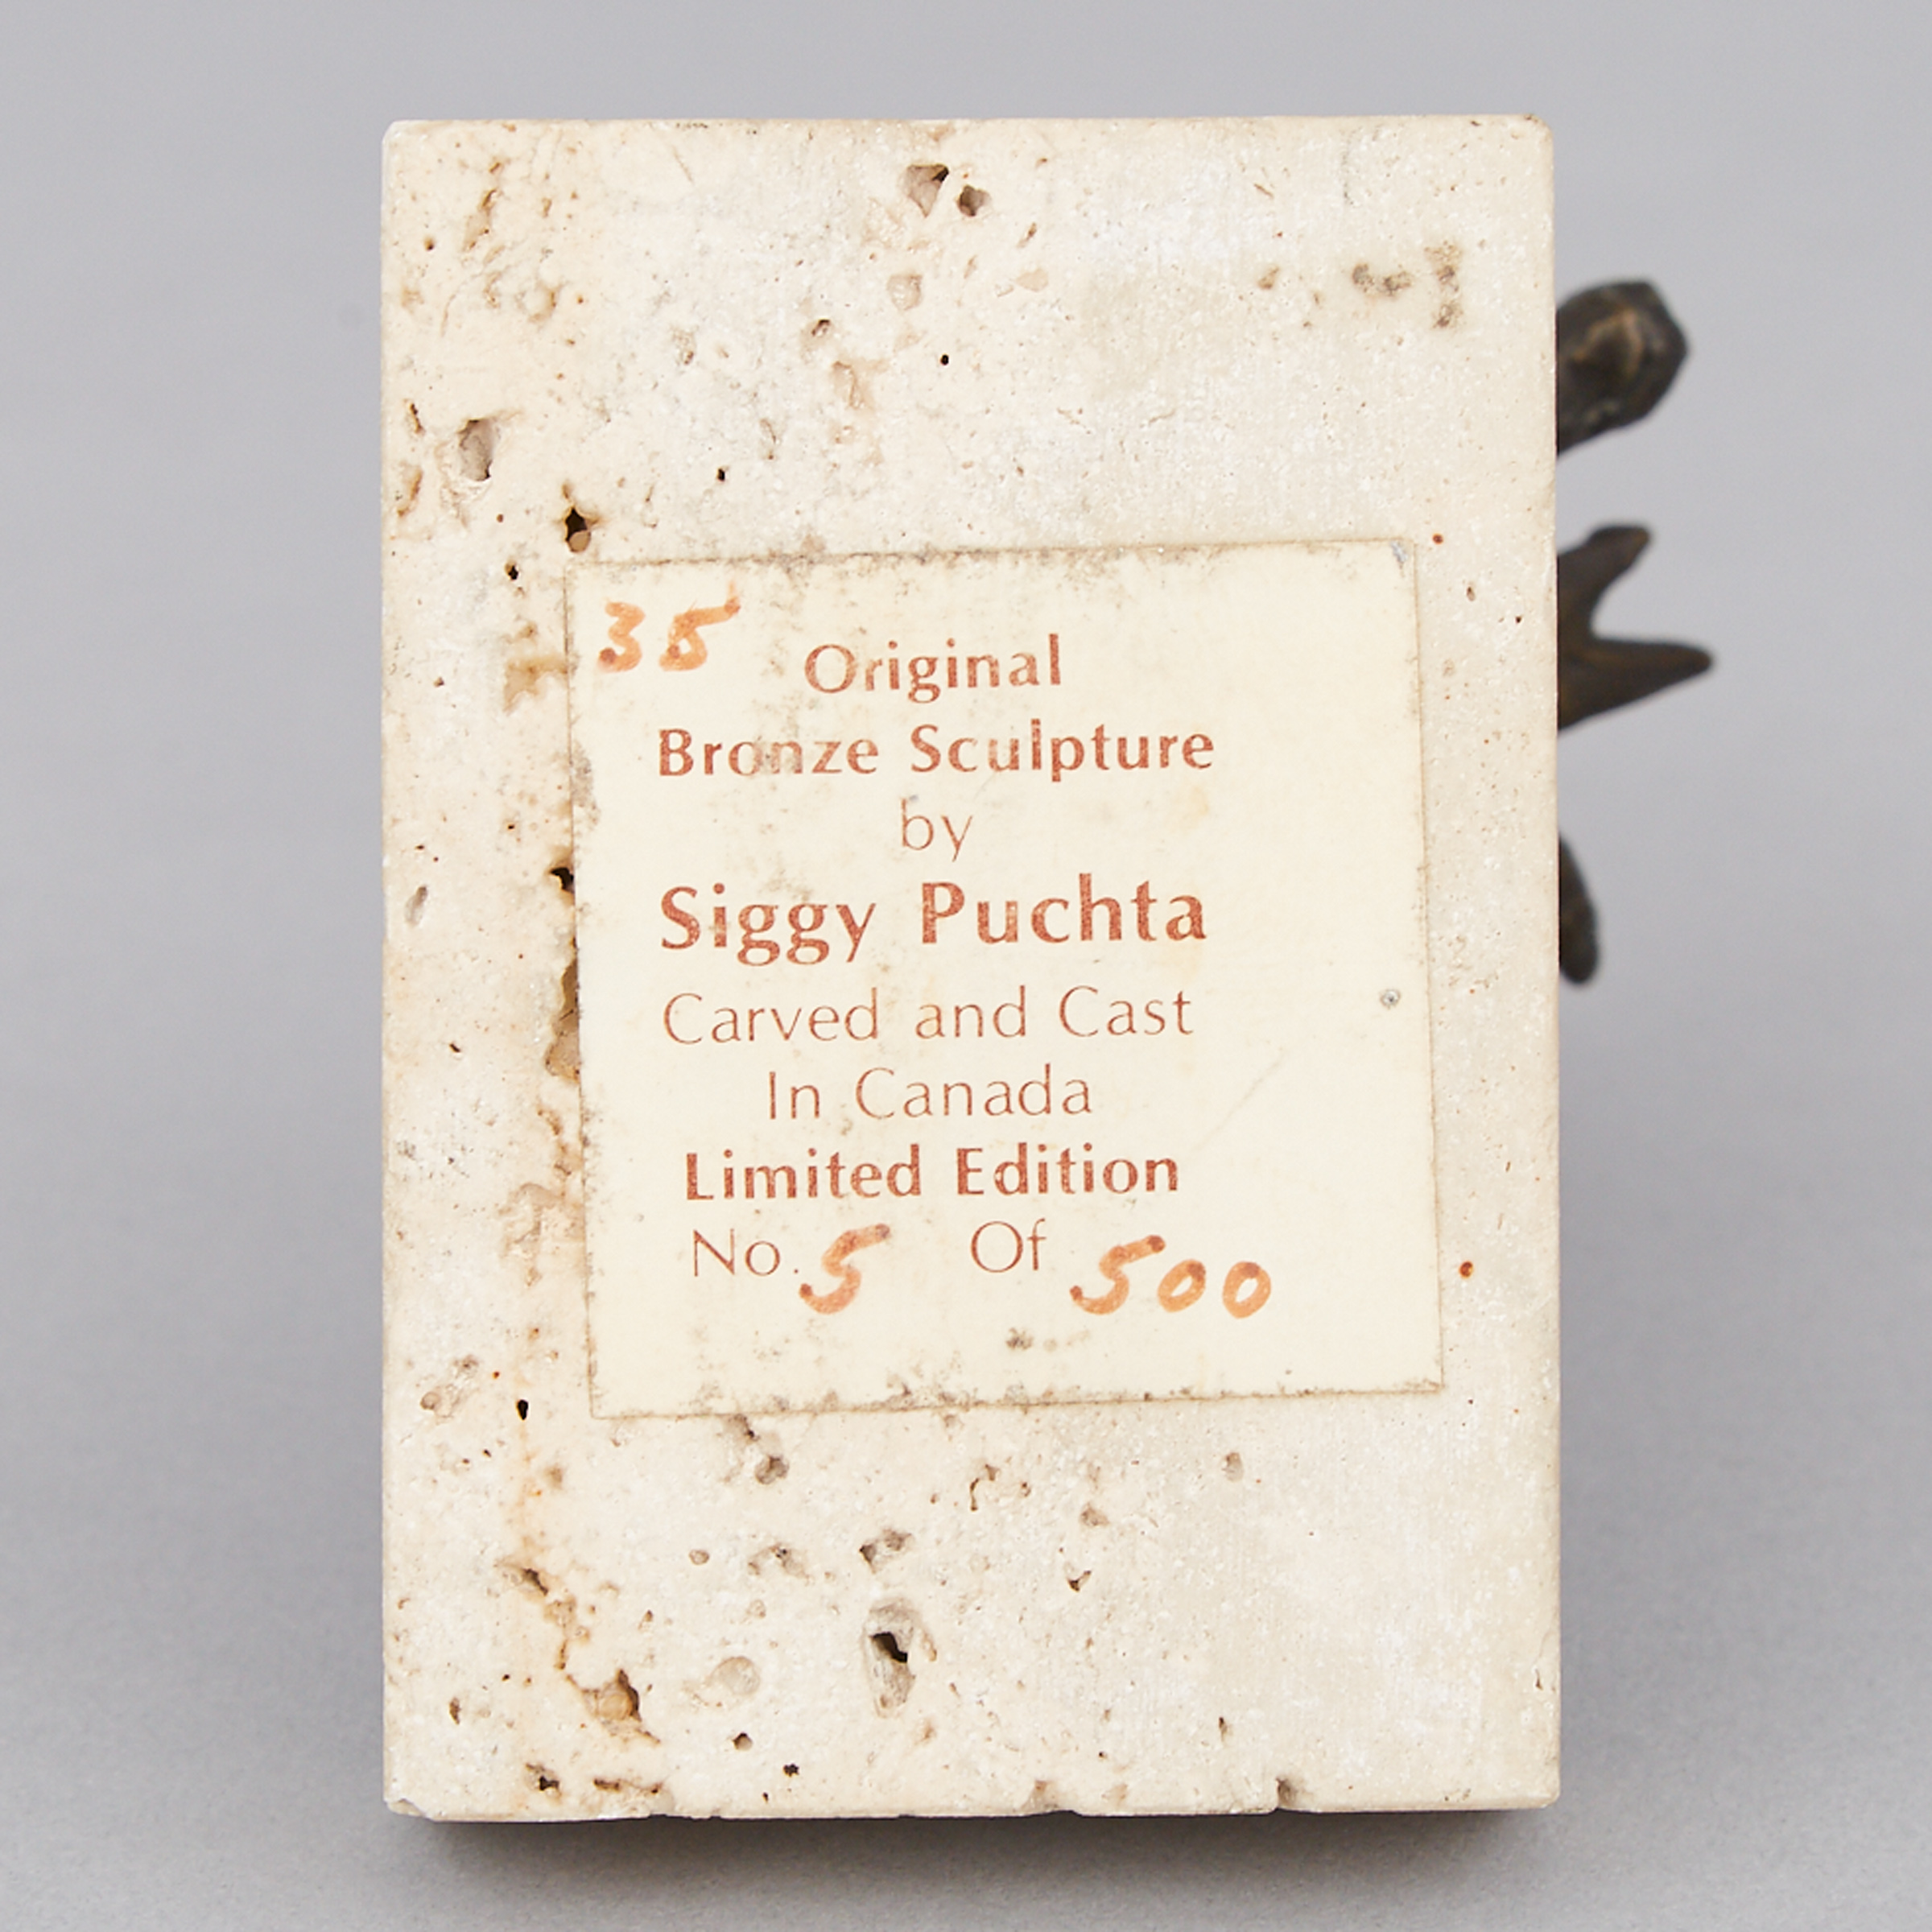 Siegfried (Siggy) Puchta (German/Canadian, b.1933)